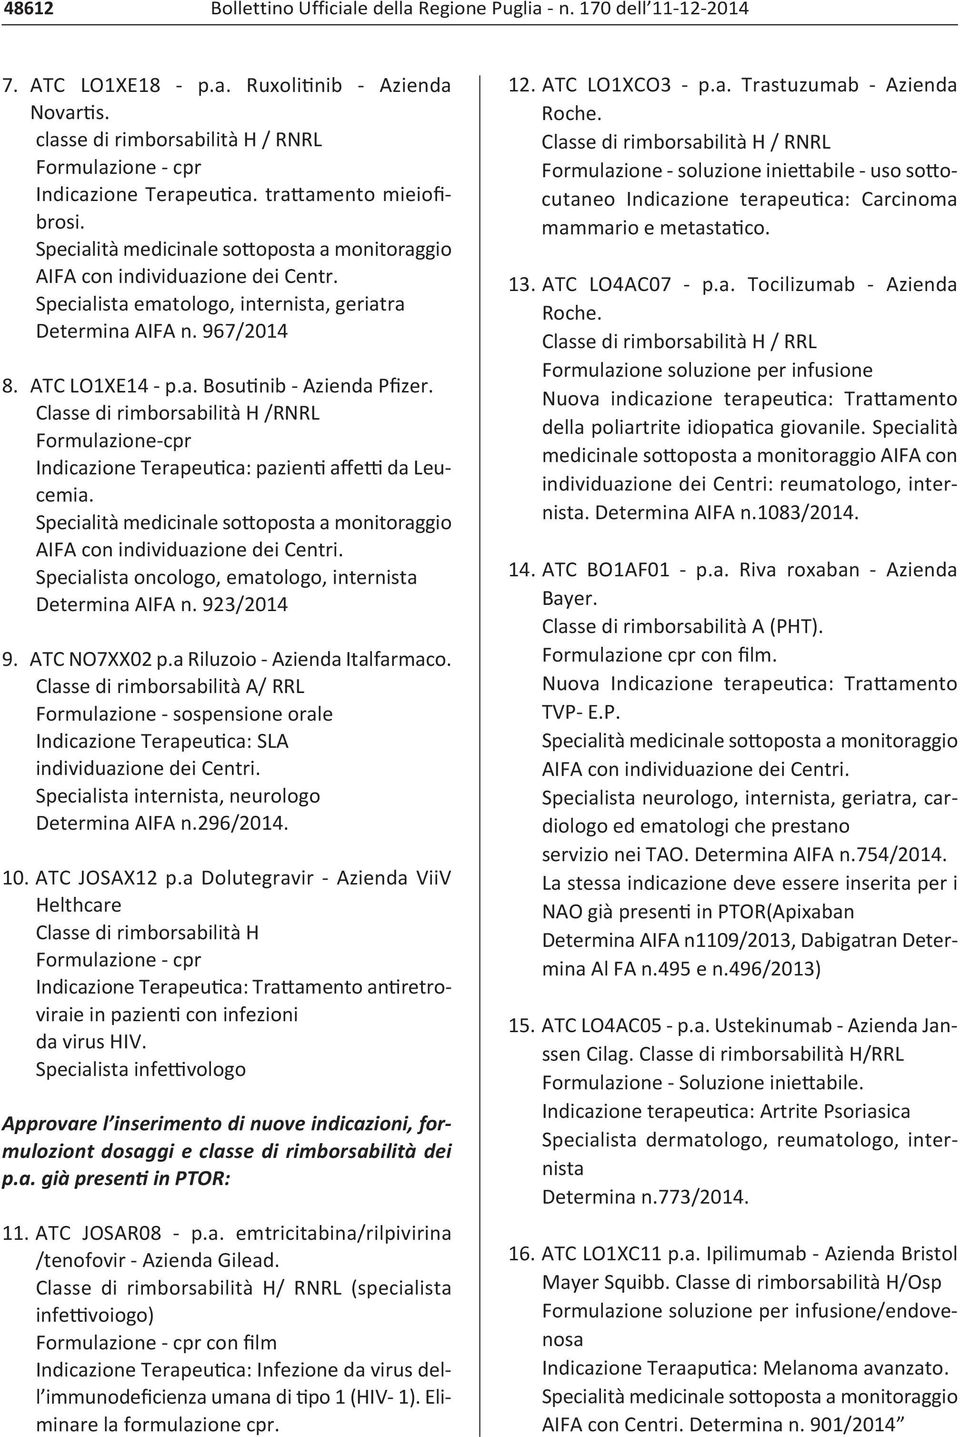 Classe di rimborsabilità H /RNRL Formulazione cpr Indicazione Terapeutica: pazienti affetti da Leucemia. Specialista oncologo, ematologo, internista Determina AIFA n. 923/2014 9. ATC NO7XX02 p.